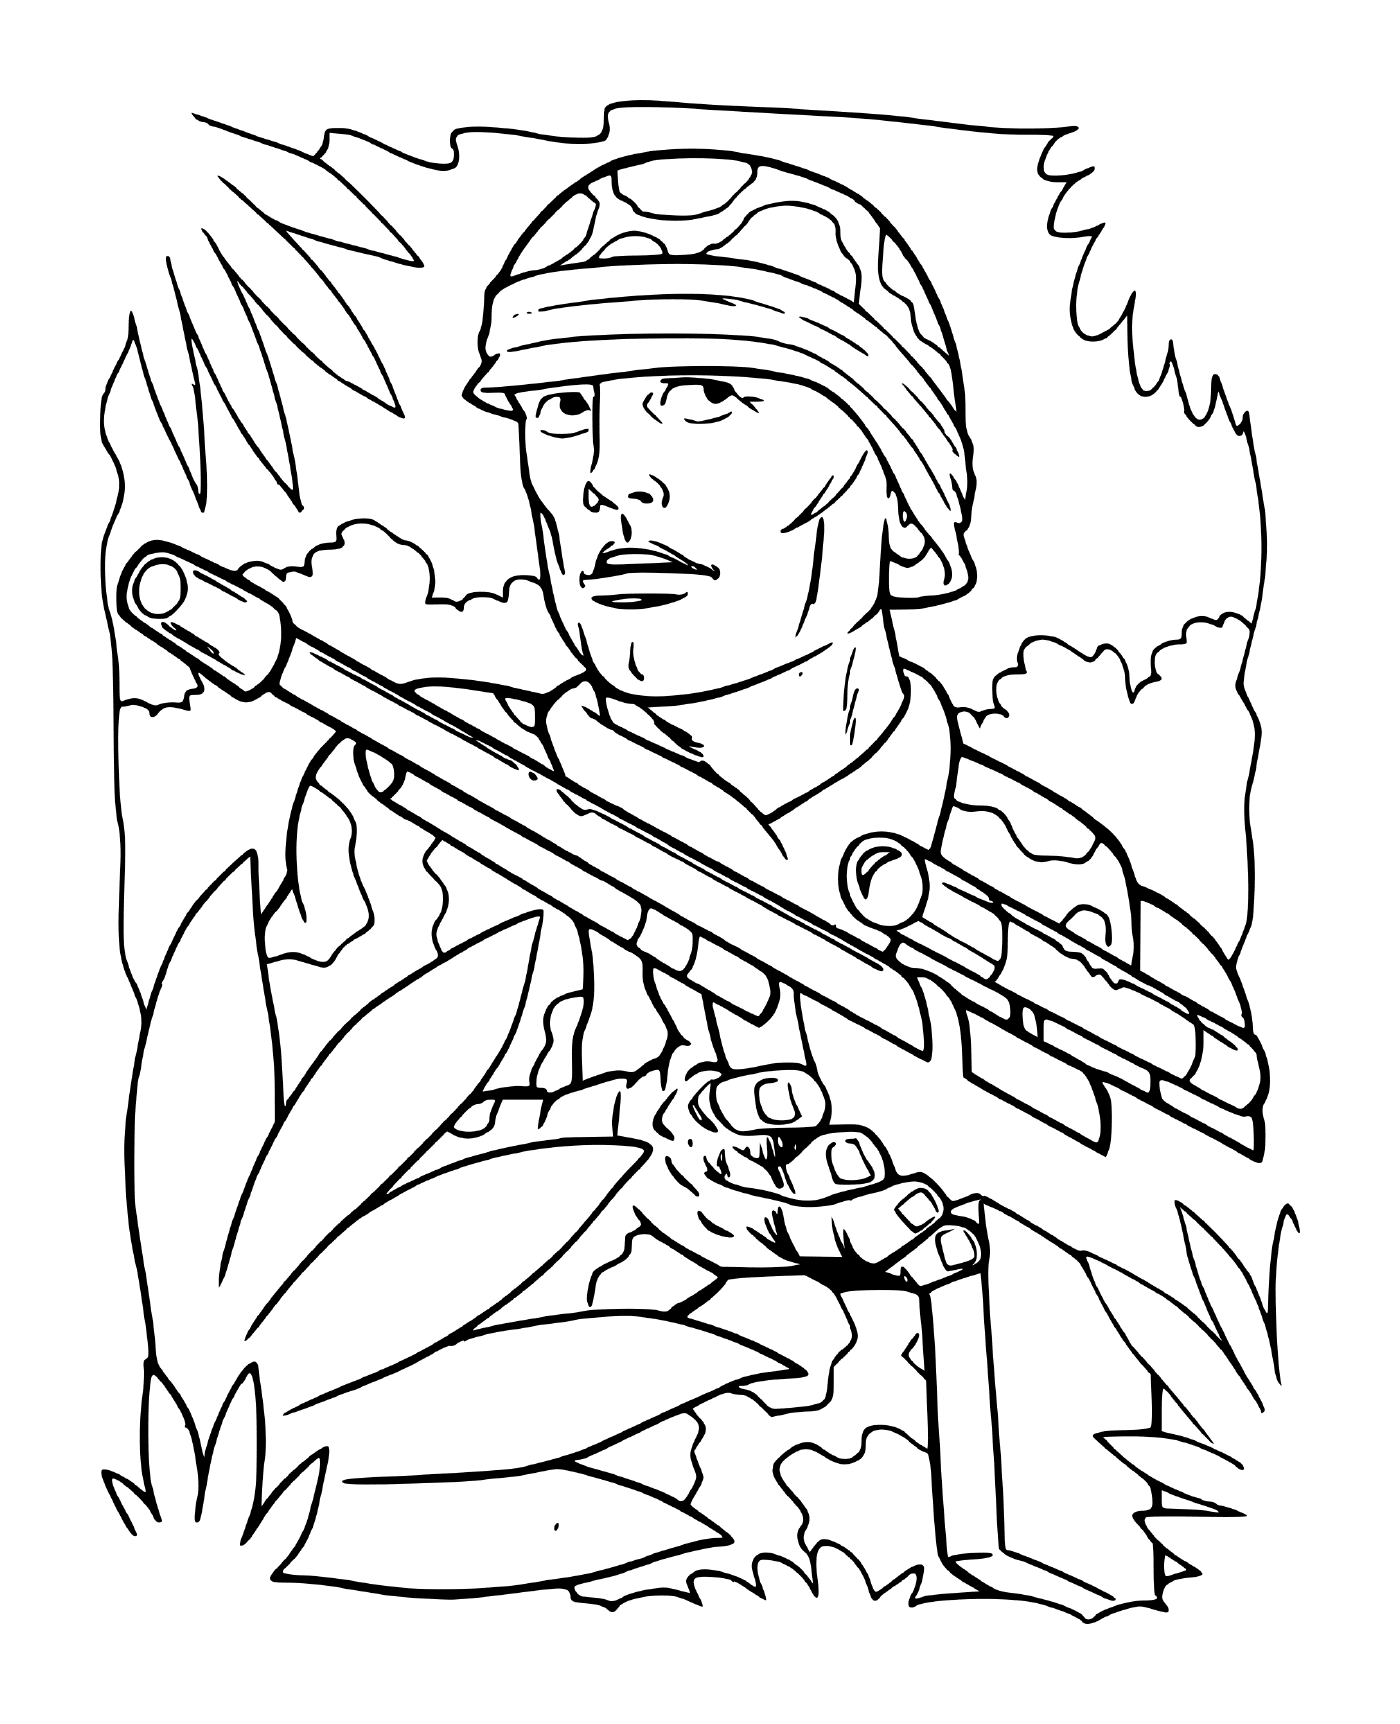  Soldat des Krieges im Wald: ein Soldat, der ein Gewehr im Wald hält 